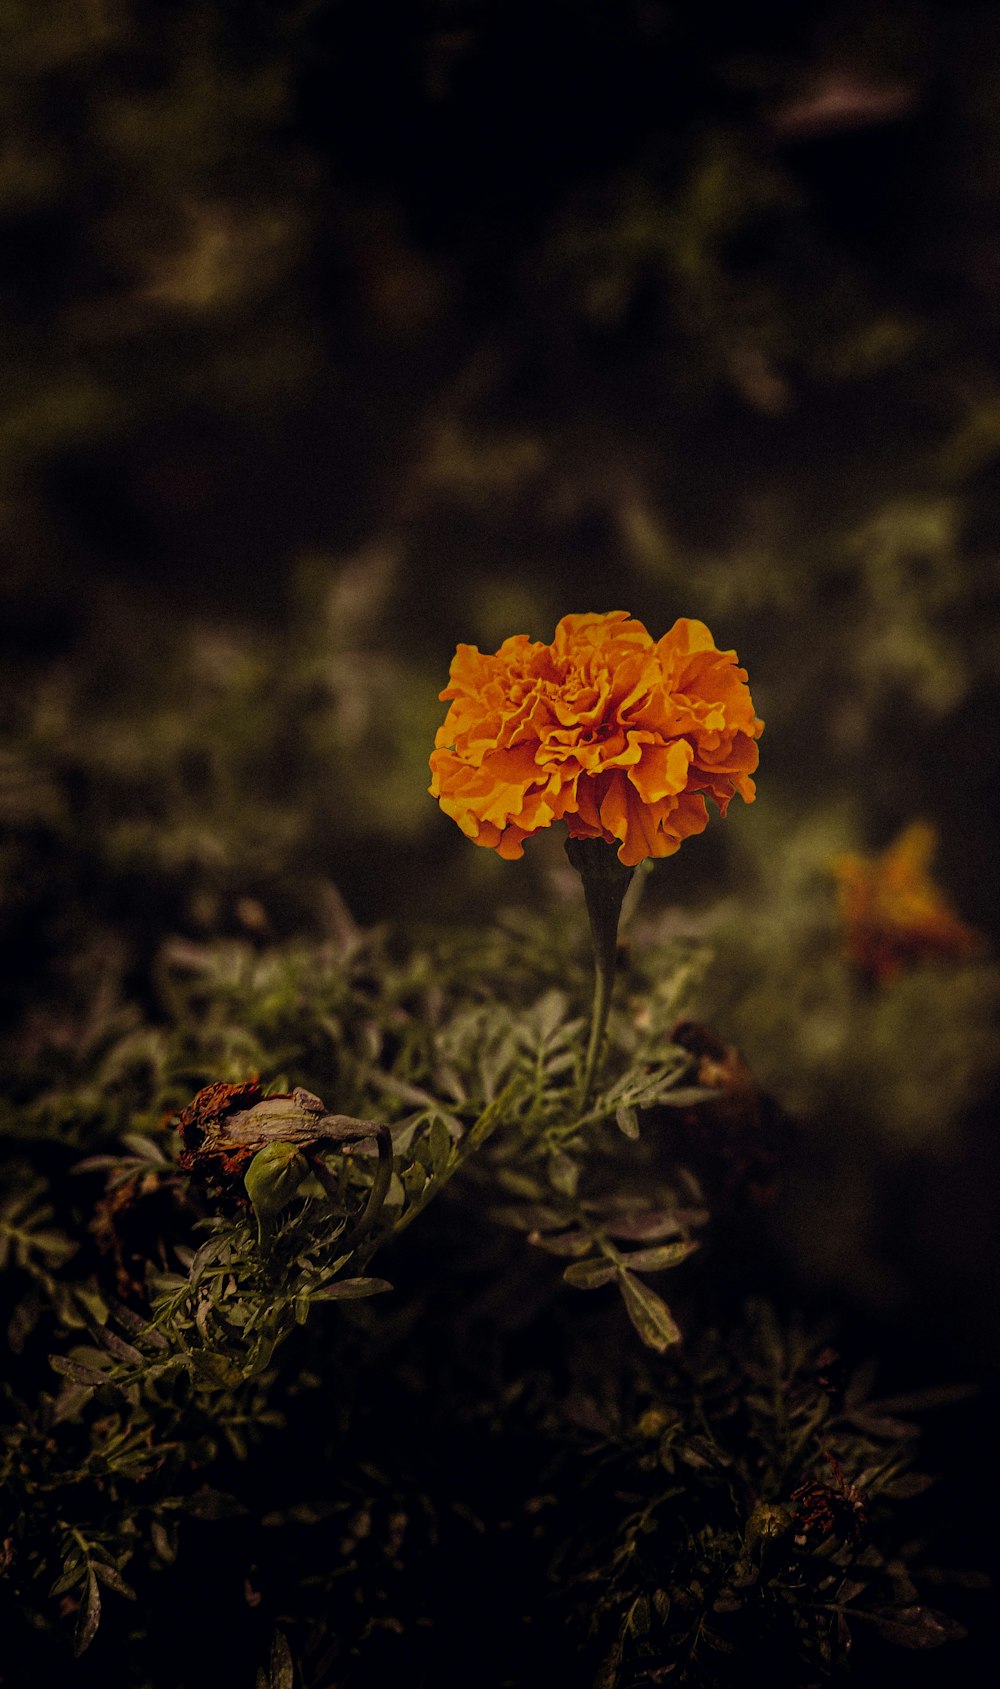 緑豊かな野原の上に座る一輪のオレンジ色の花